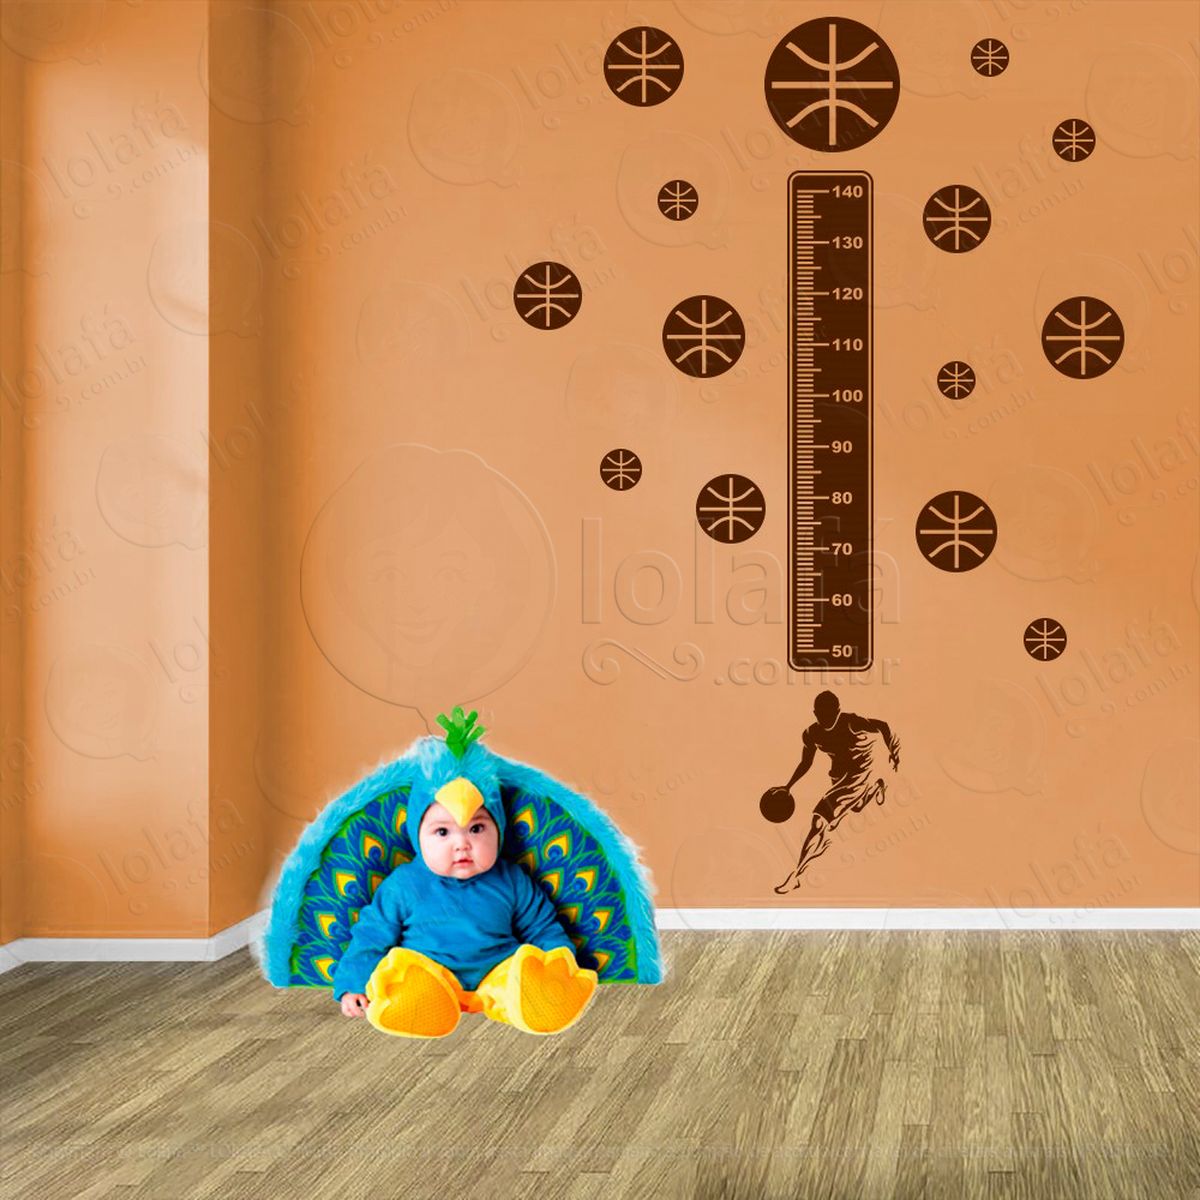 basquetebol e bolas de basquete adesivo régua de crescimento infantil, medidor de altura para quarto, porta e parede - mod:288